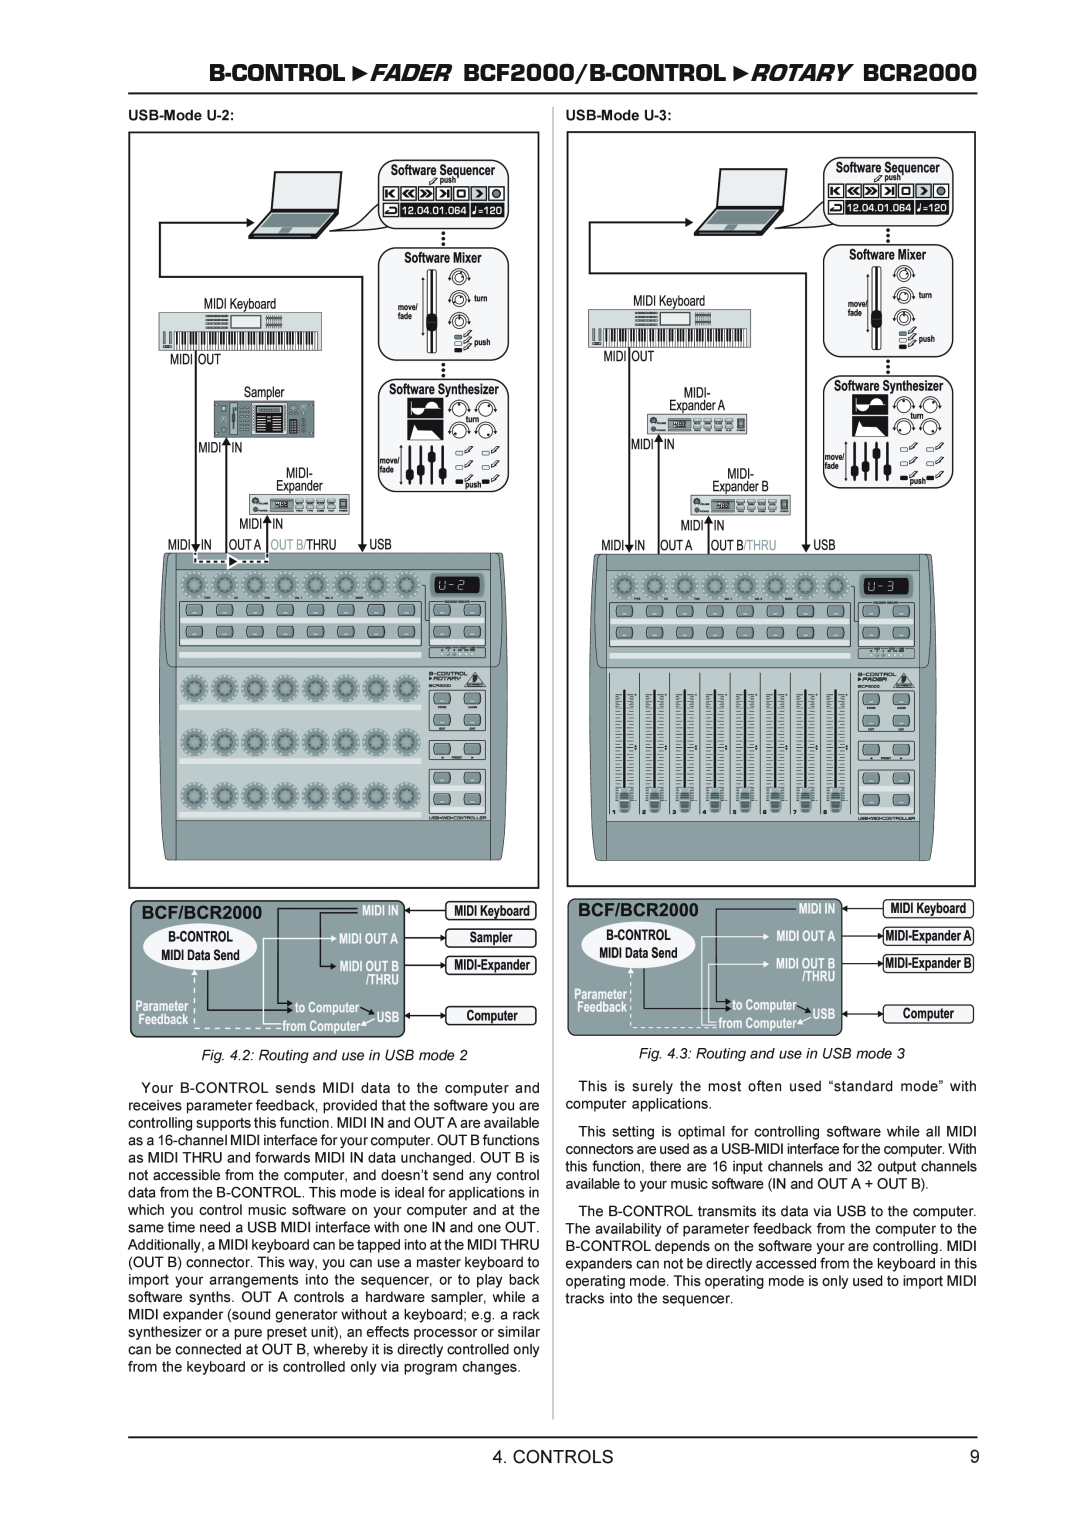 Behringer FADERB CF2000B manual B-CONTROL FADER BCF2000/B-CONTROL ROTARY BCR2000, Controls, USB-Mode U-2, USB-Mode U-3 